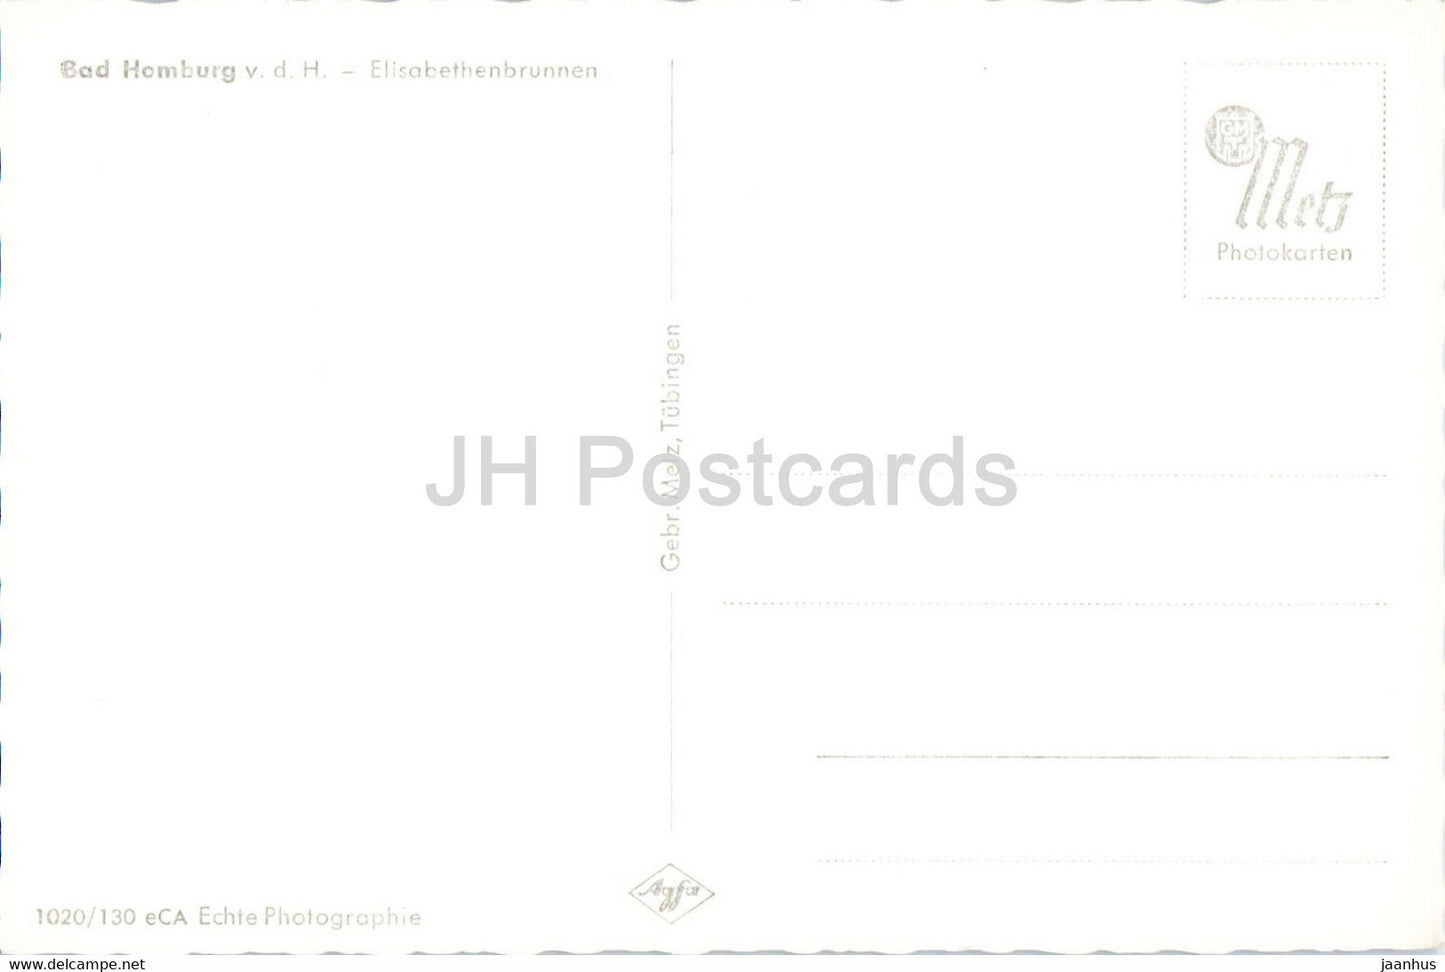 Bad Homburg - Elisabethenbrunnen - alte Postkarte - Deutschland - unbenutzt